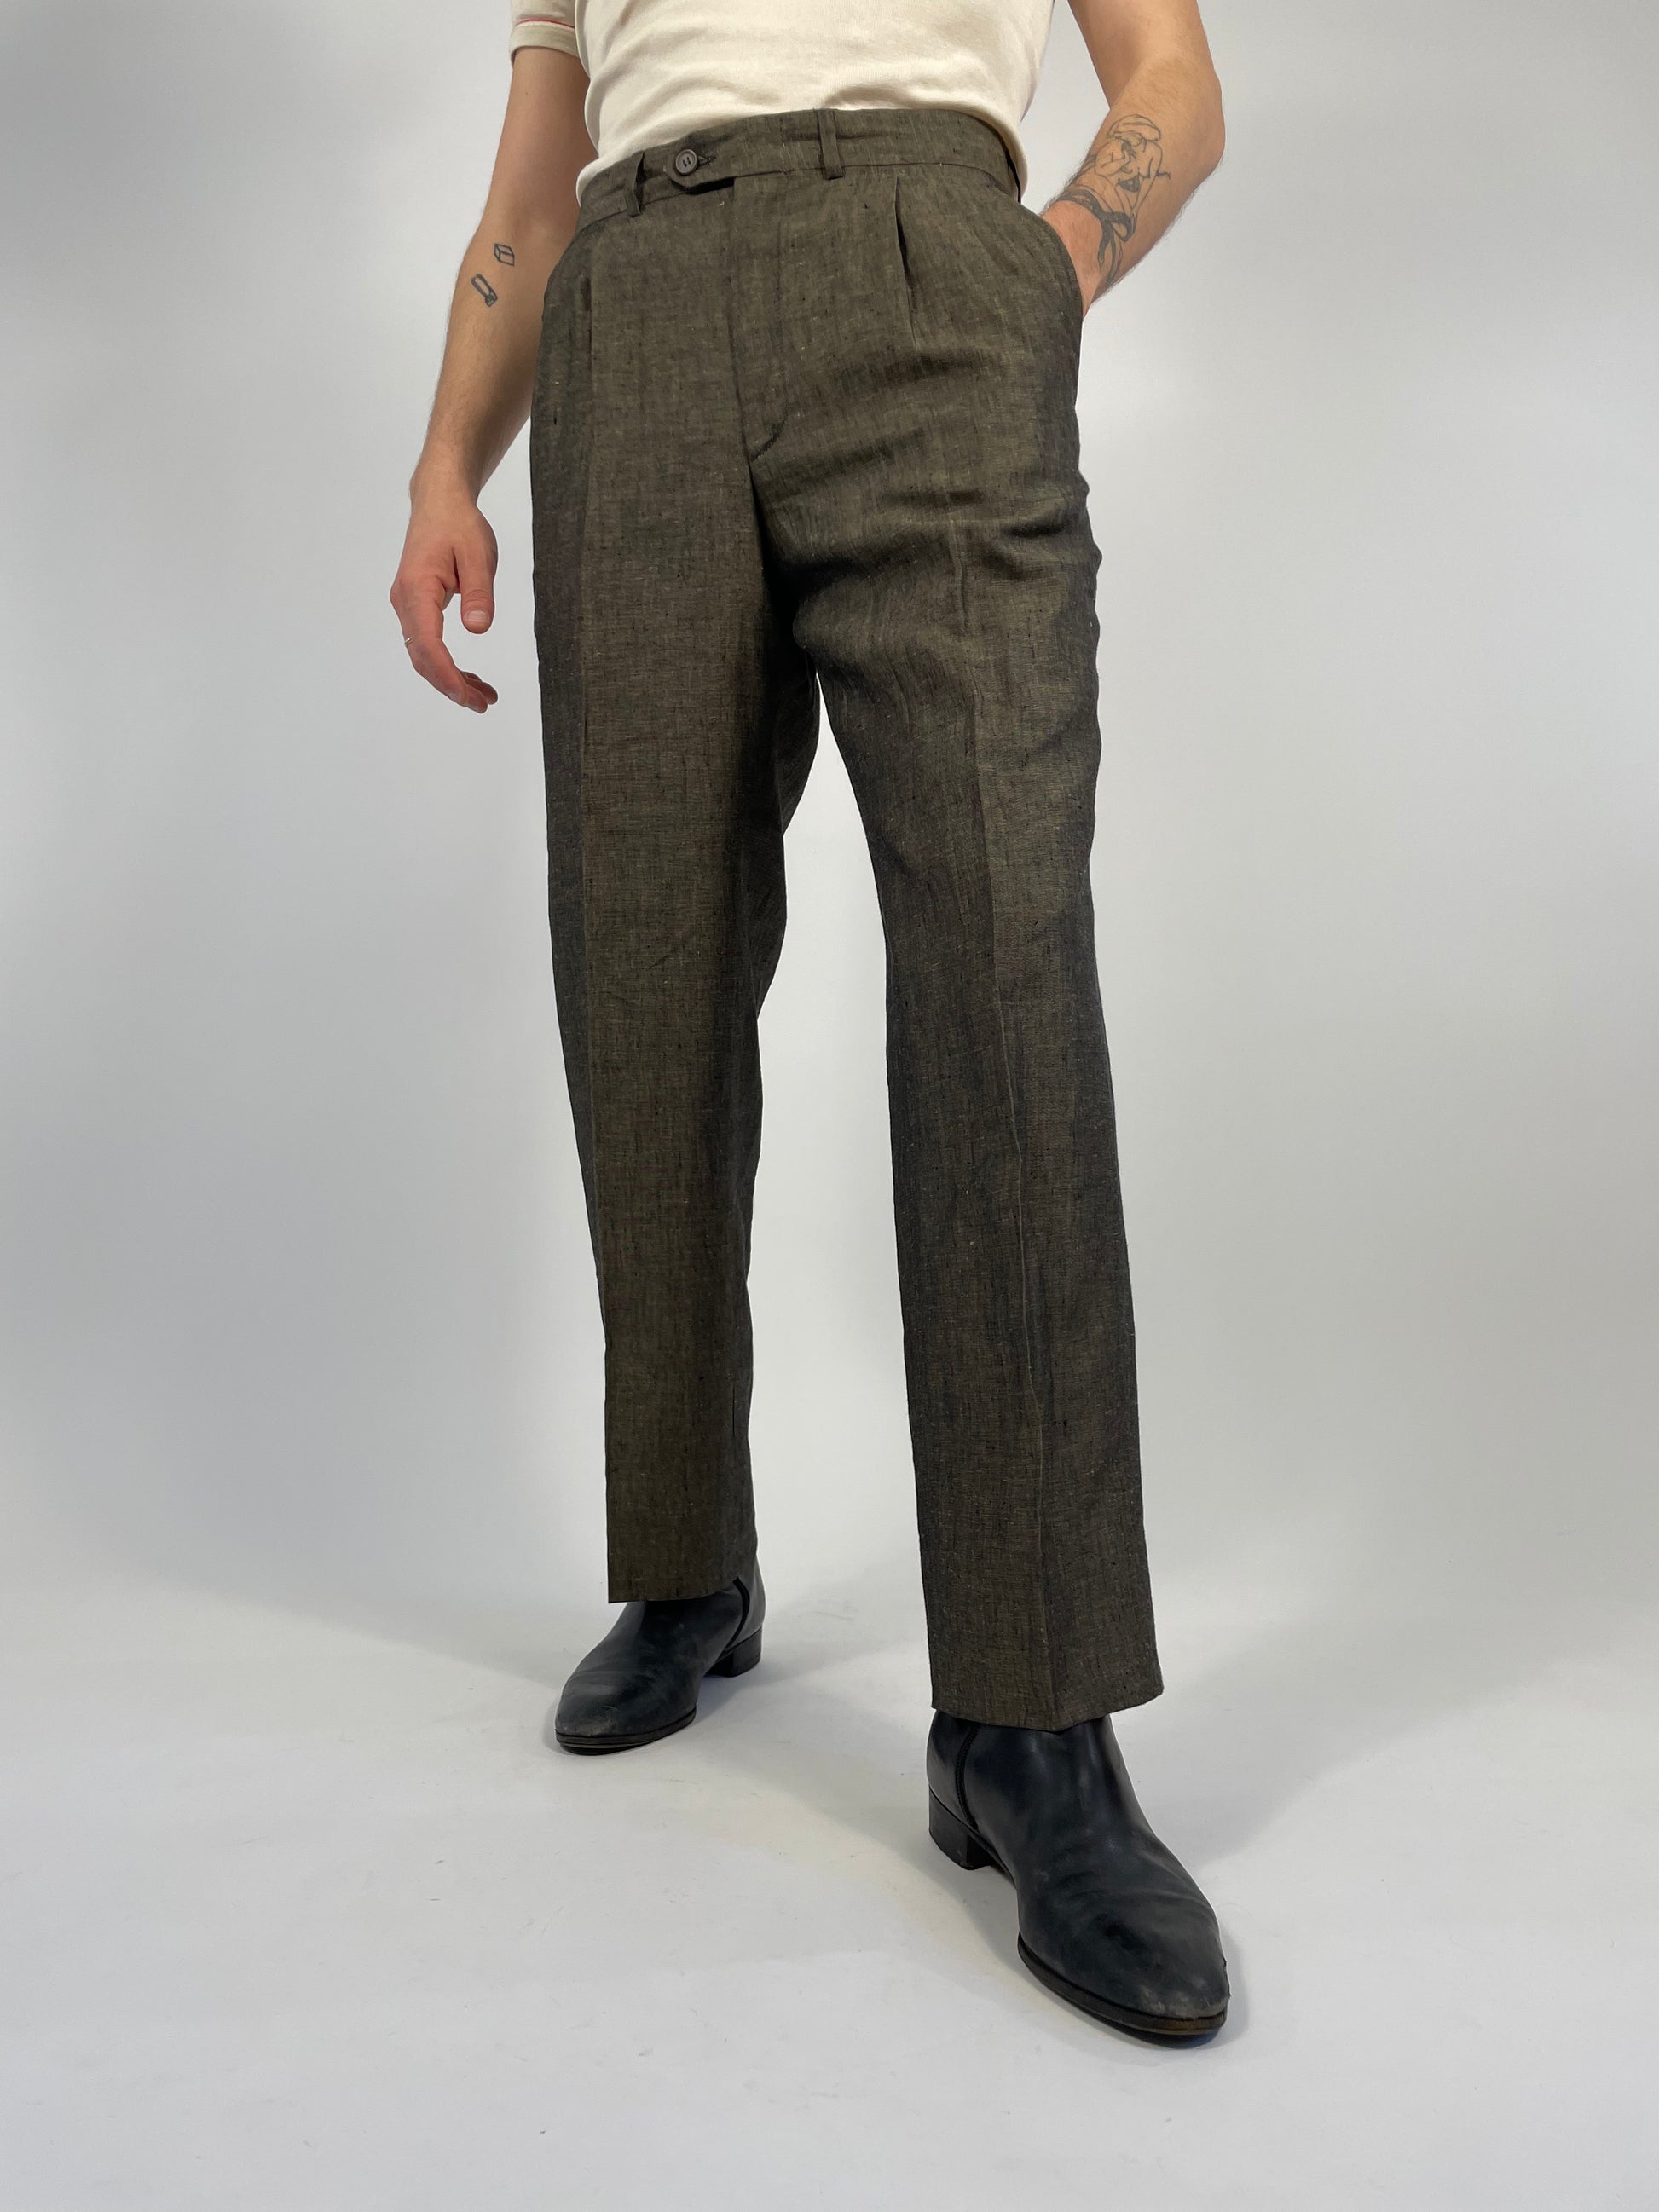 pantalone-vintage-da-uomo-in-lino-colore-marrone